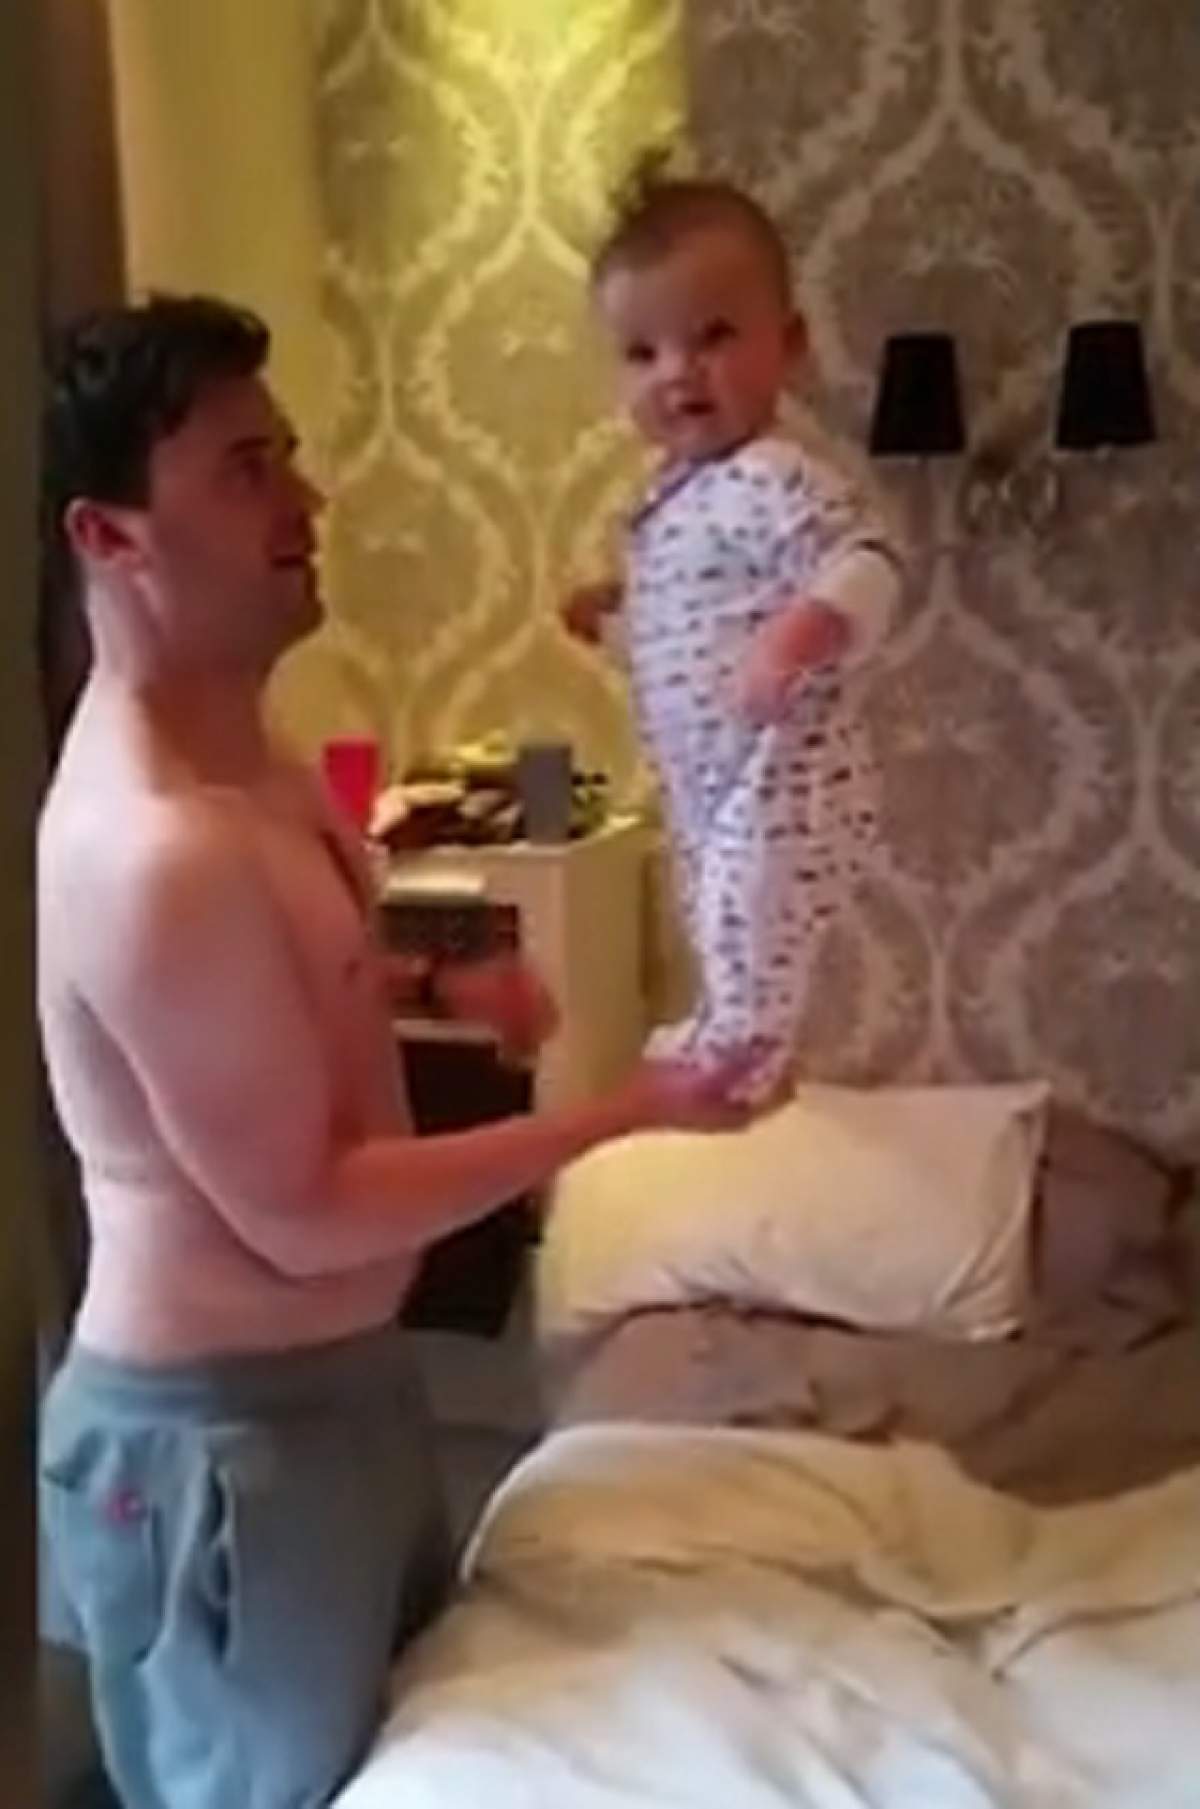 VIDEO / Un bebeluş de şase luni i-a vrăjit pe internauţi! Ce a făcut micuţul a surprins pe toată lumea